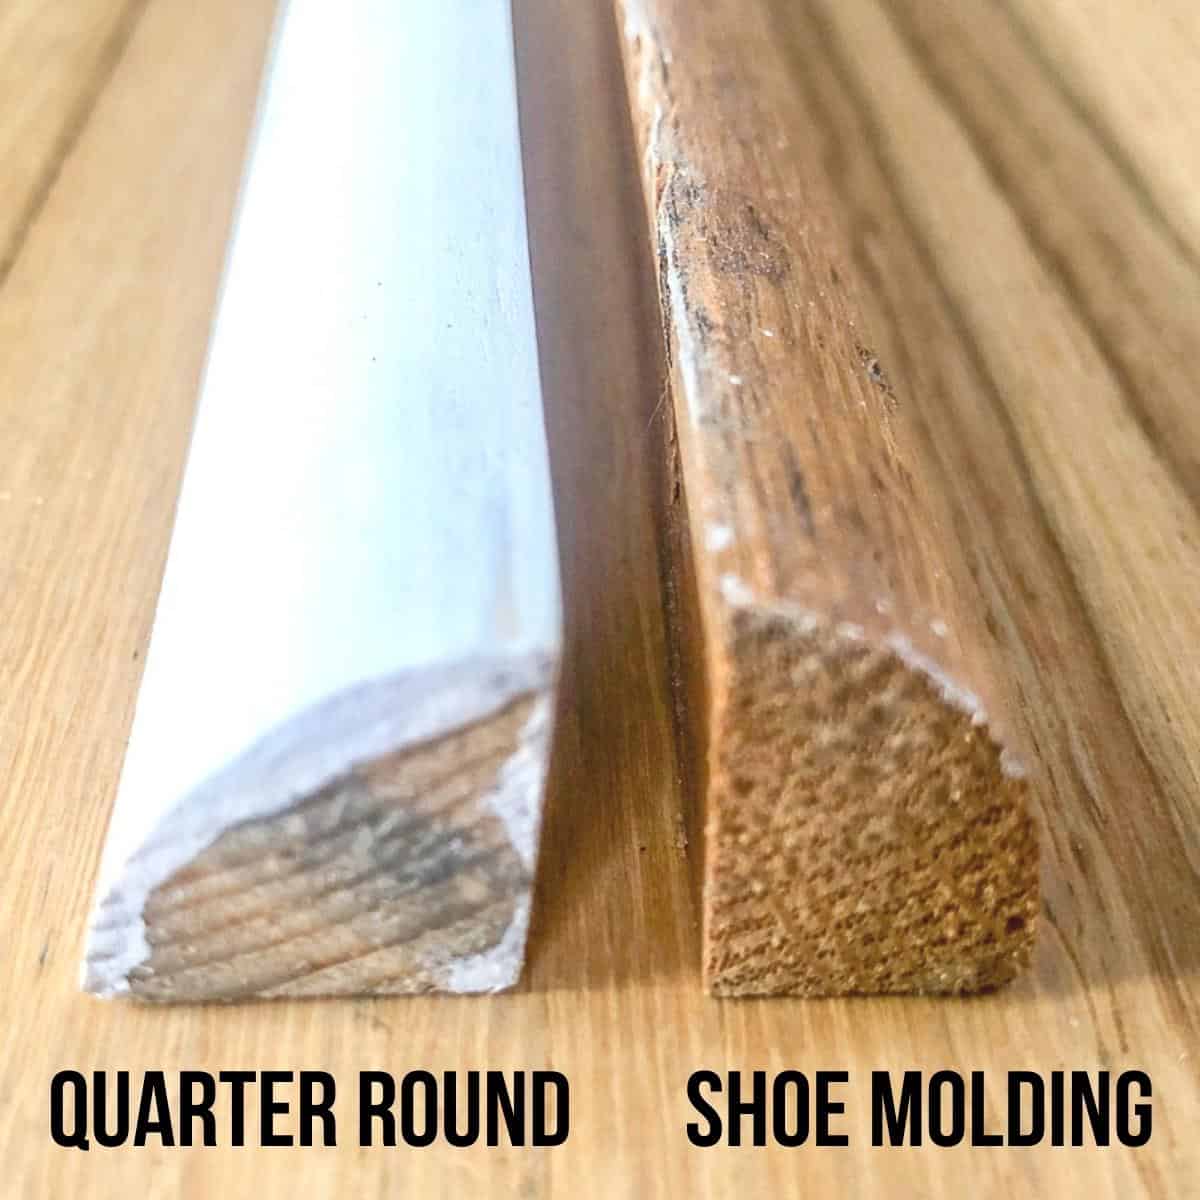 Shoe Molding Vs Quarter Round The, Quarter Round Shoe Molding